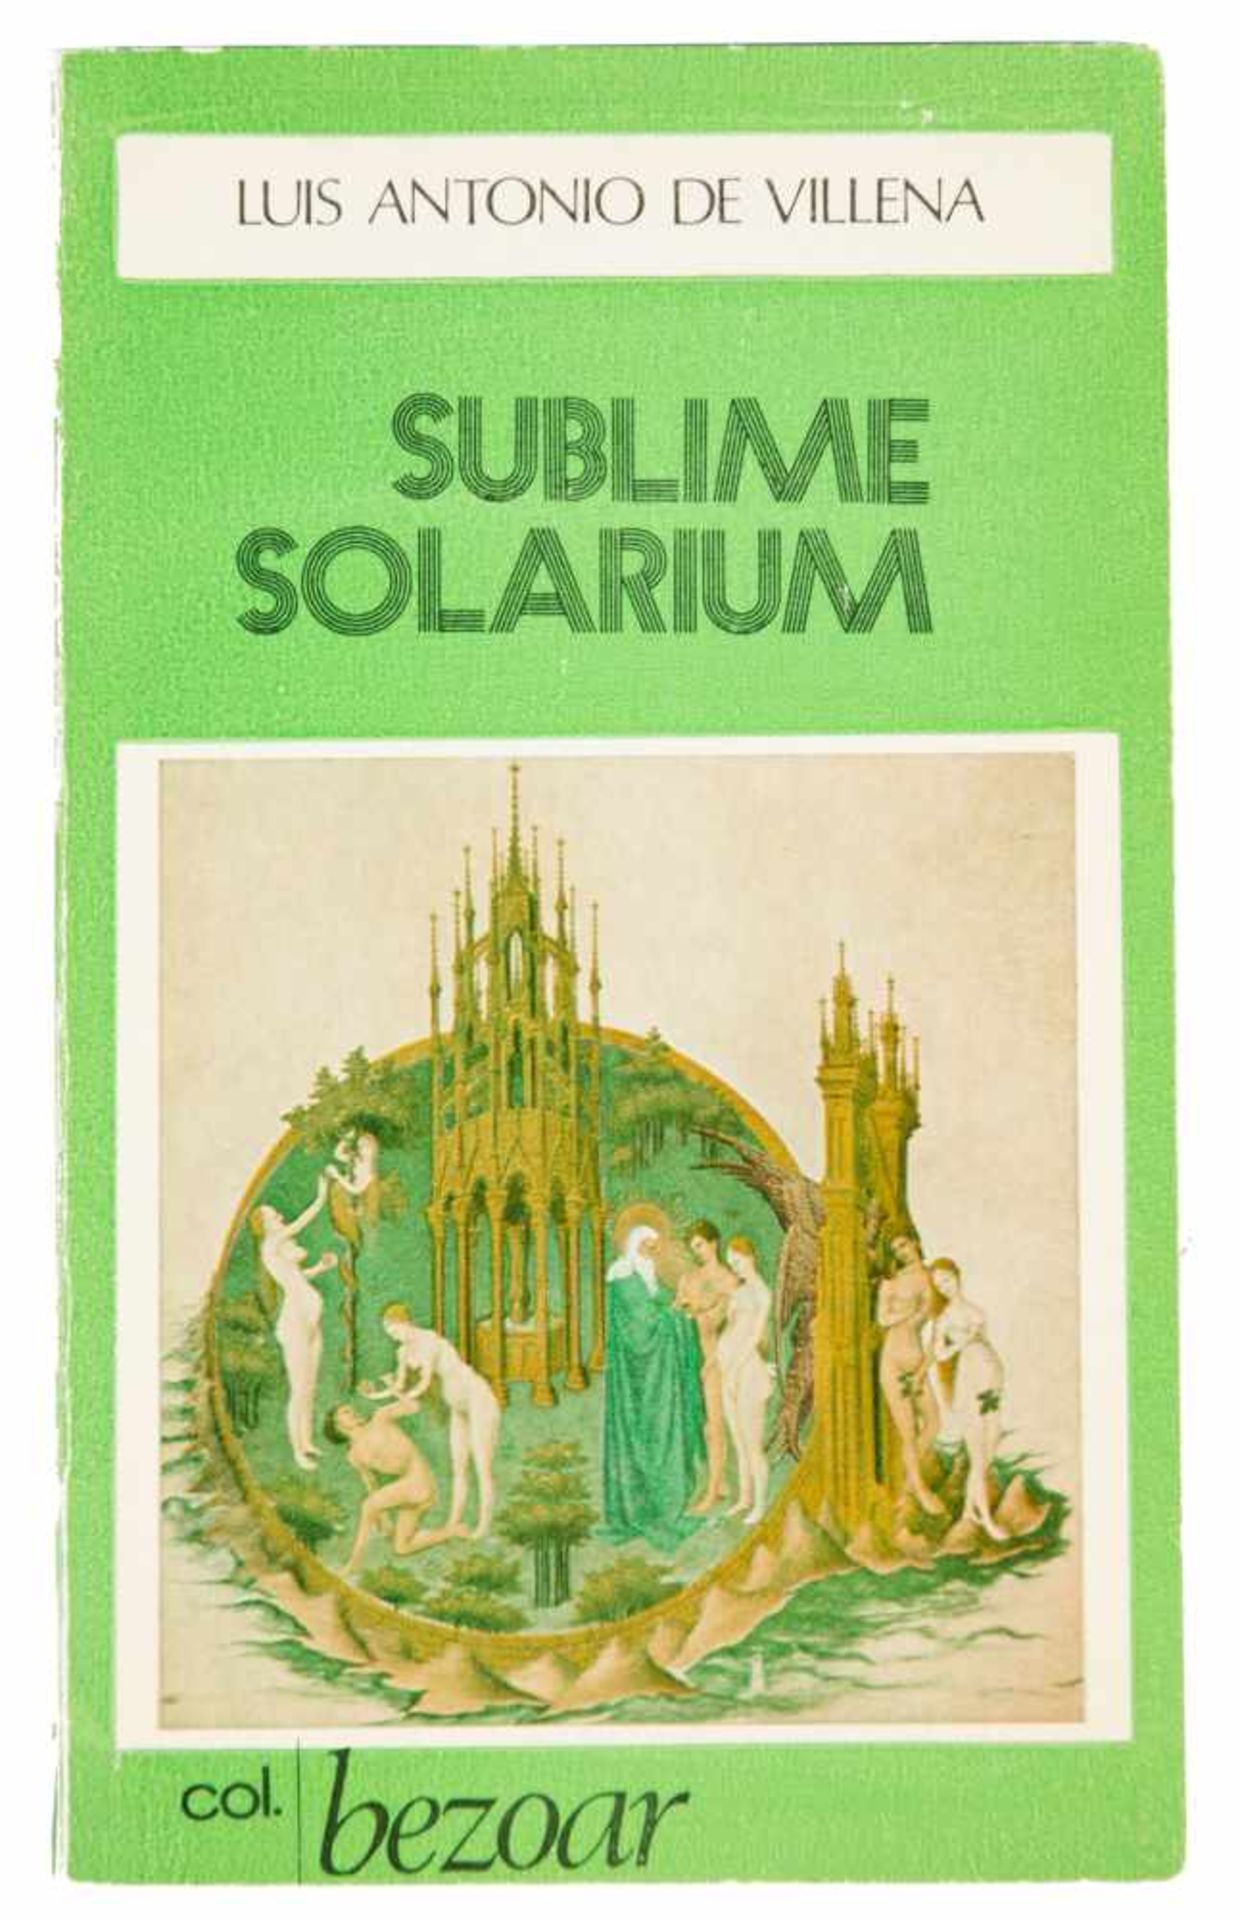 Villena, Luis Antonio de. Sublime solárium. 1st. Edition. Madrid: Published by Azur, 1971. Col. - Bild 2 aus 2